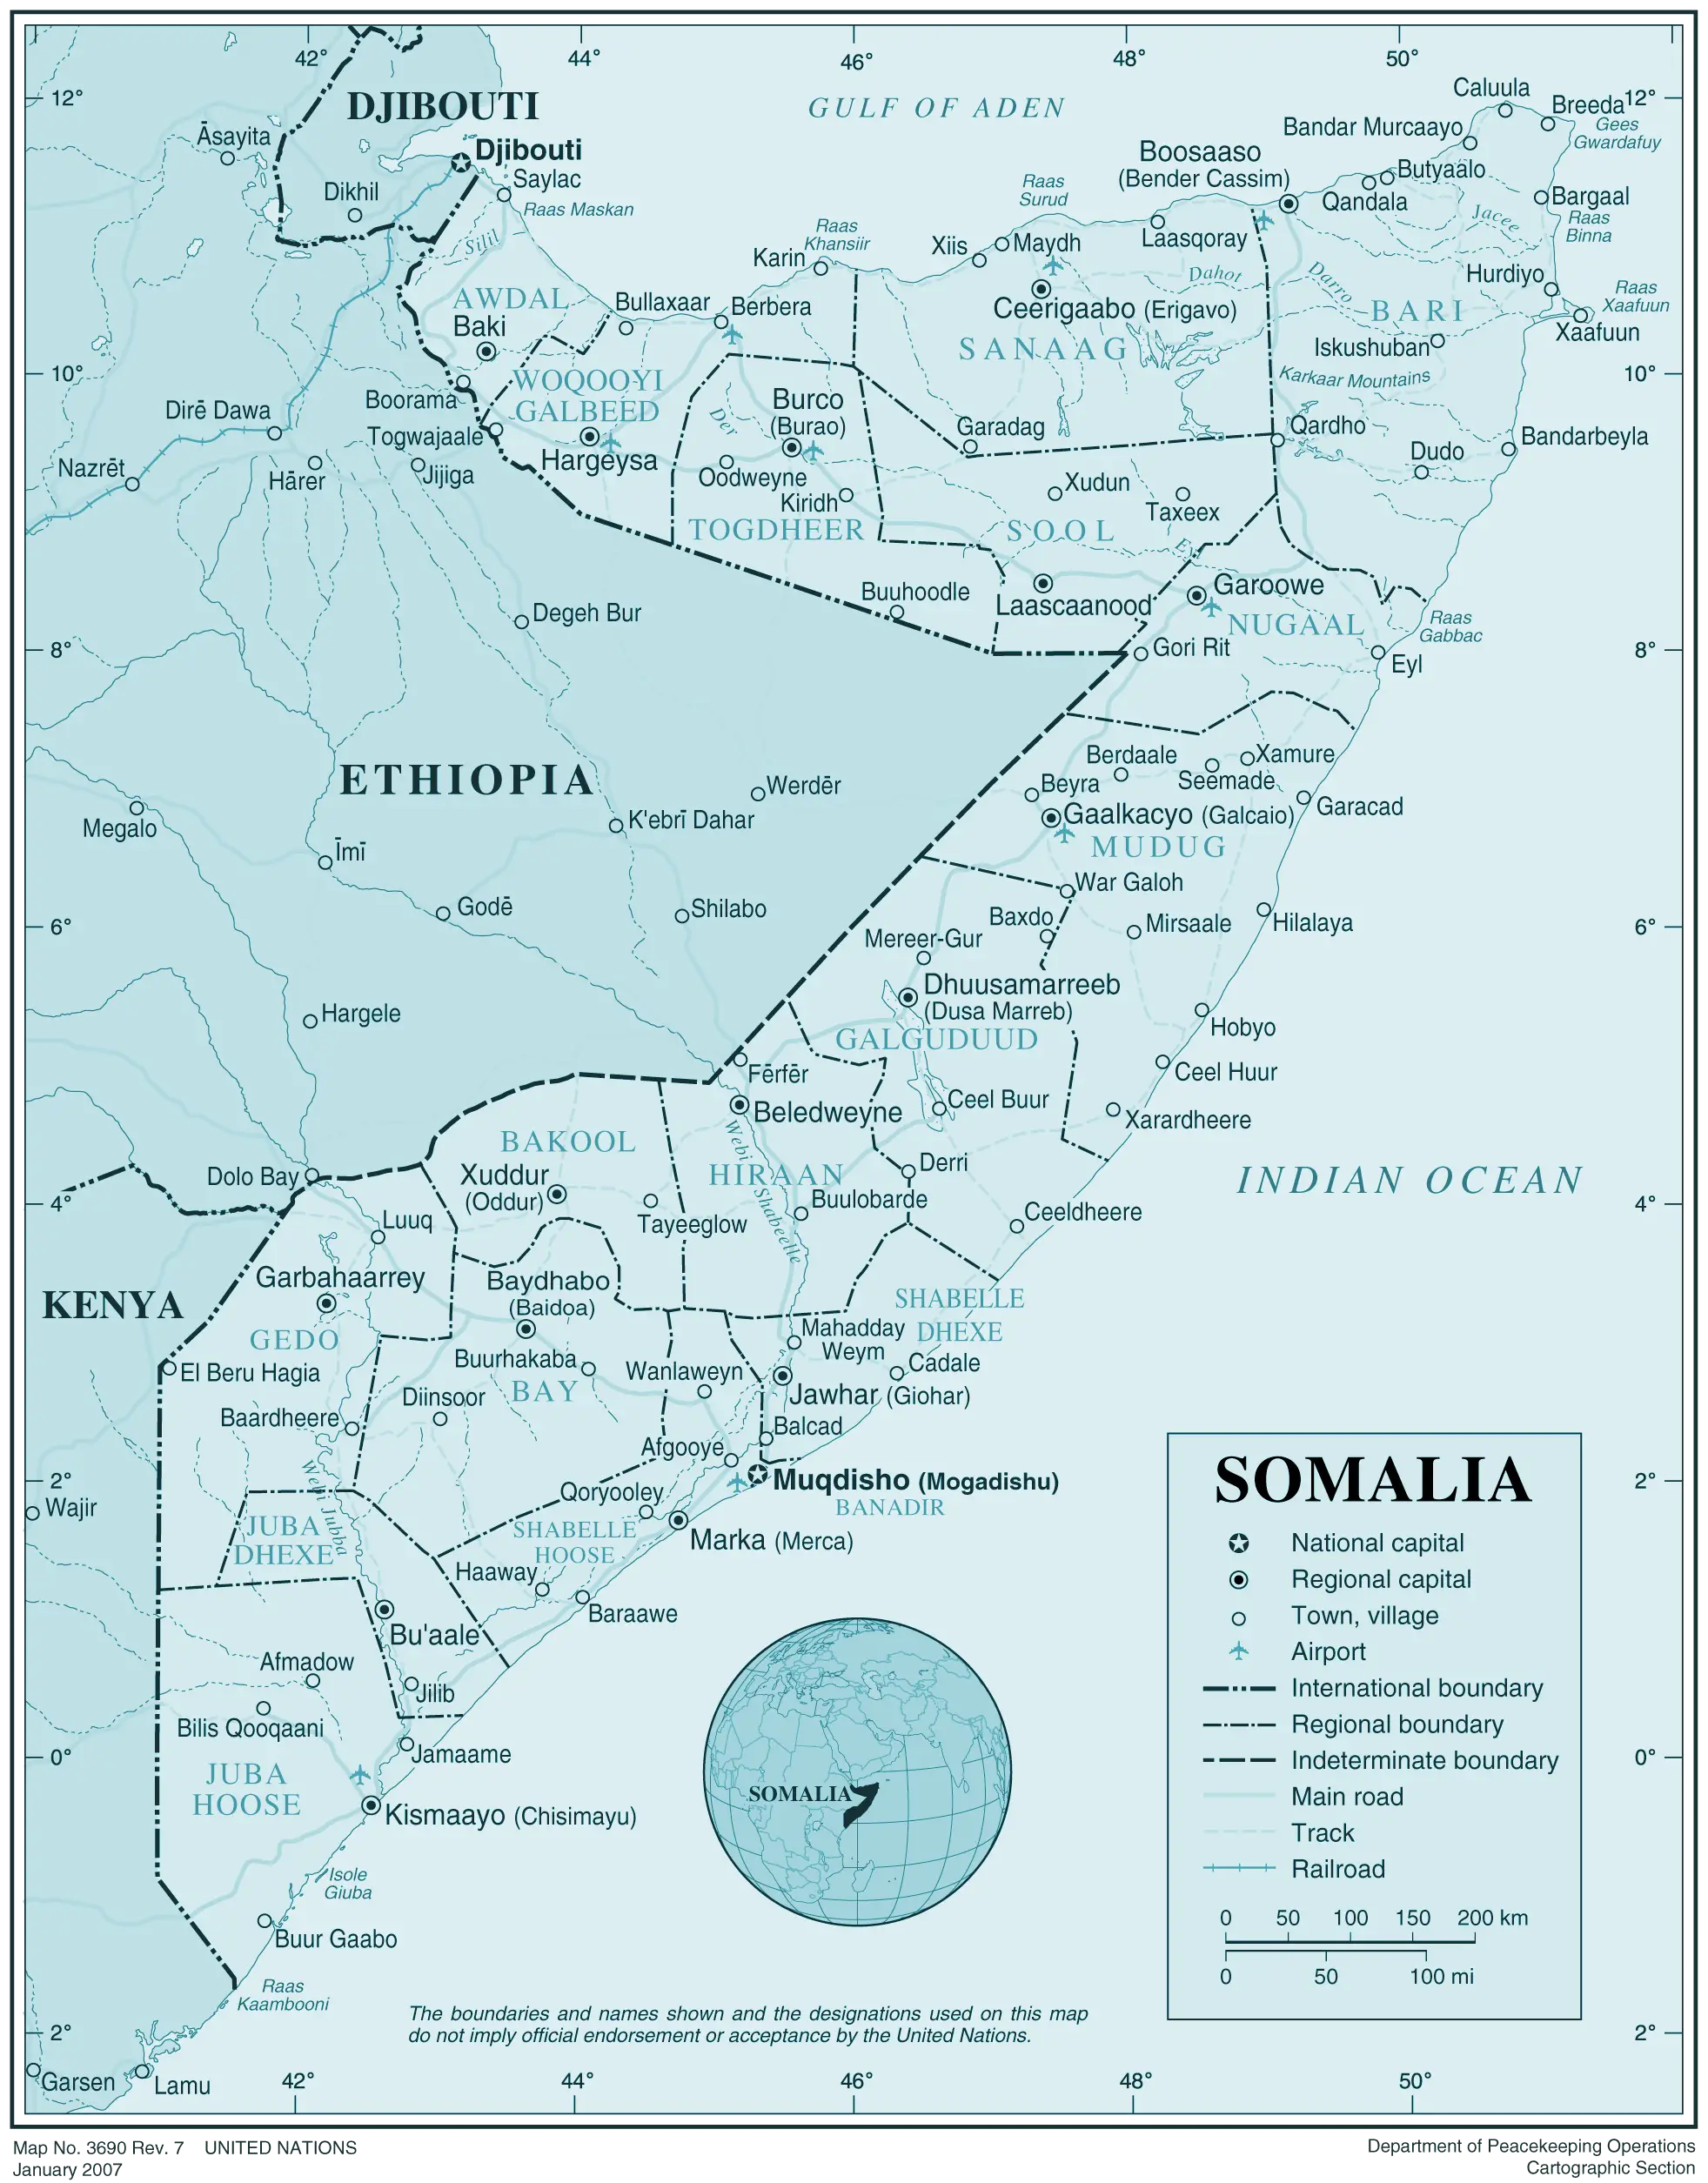 Somalia 1